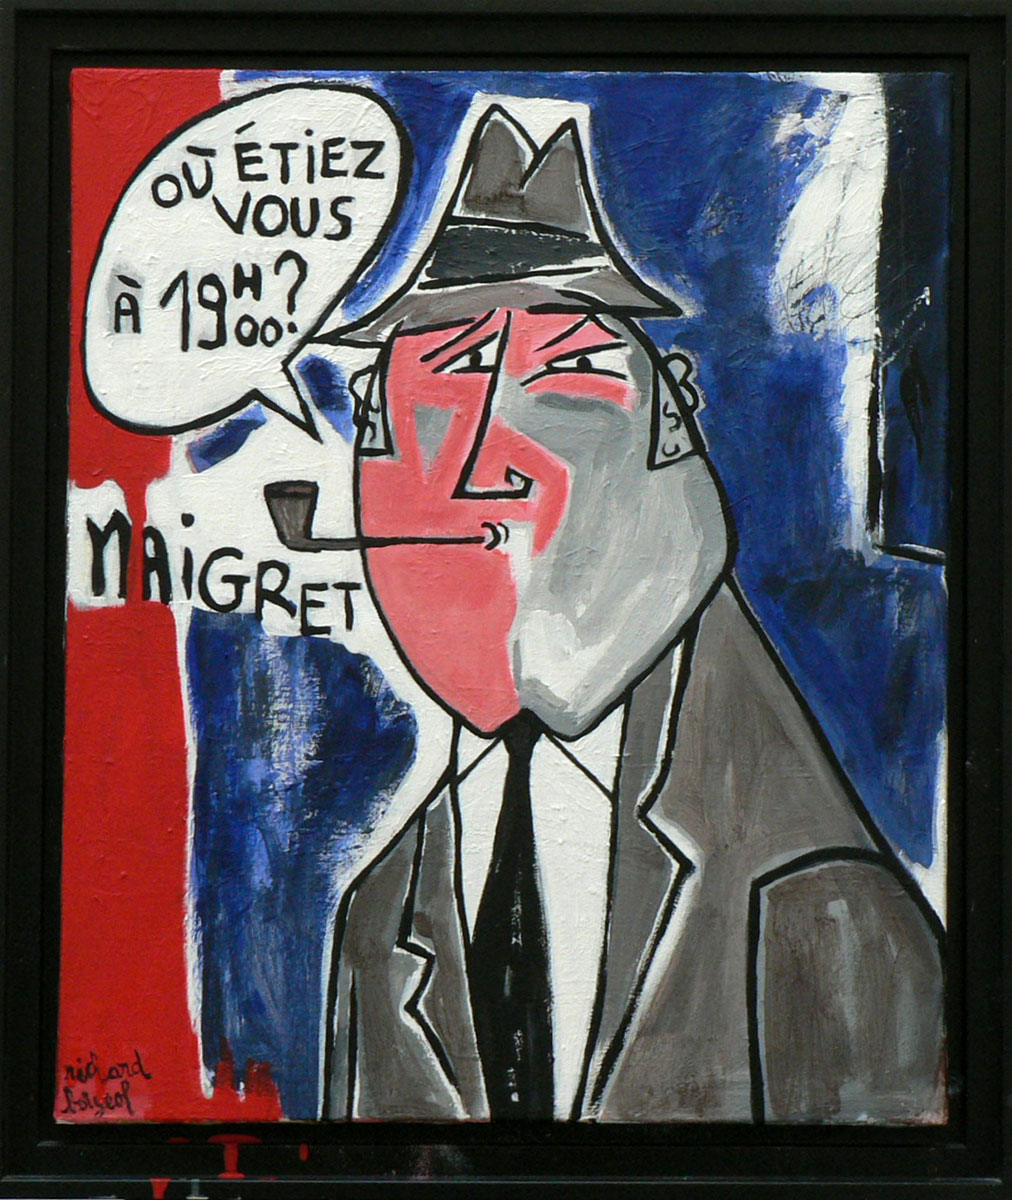 Maigret